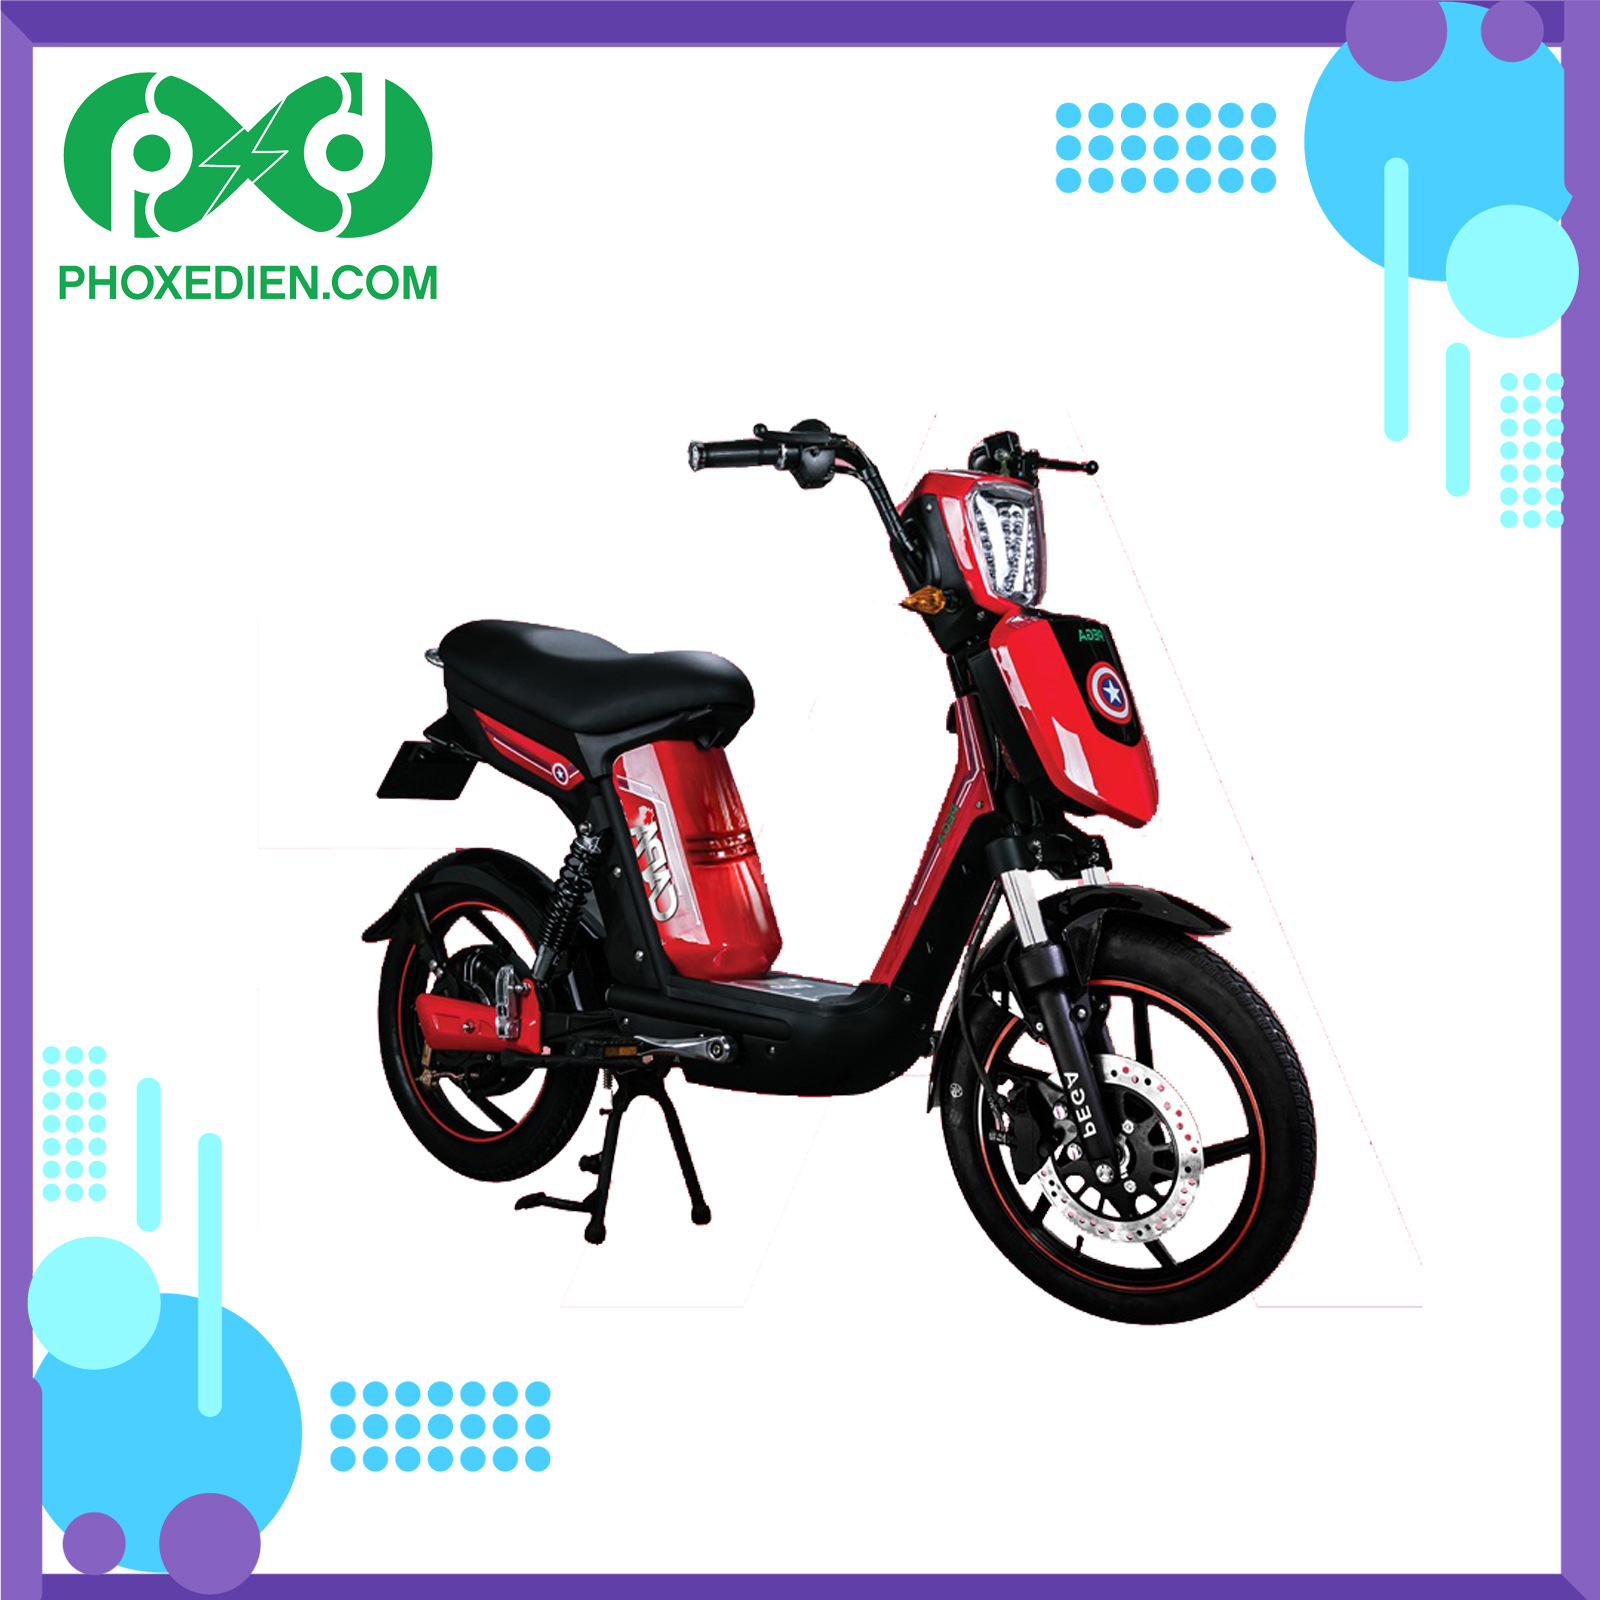 Xe đạp điện Pega CAP As: Bạn đang tìm kiếm một chiếc xe đạp điện đáng tin cậy và tiện lợi? Đừng bỏ lỡ sản phẩm Xe đạp điện Pega CAP As này của chúng tôi. Thiết kế sang trọng và chất lượng tuyệt vời sẽ làm bạn hài lòng ngay từ cái nhìn đầu tiên. Hãy truy cập để xem thêm hình ảnh về sản phẩm này.